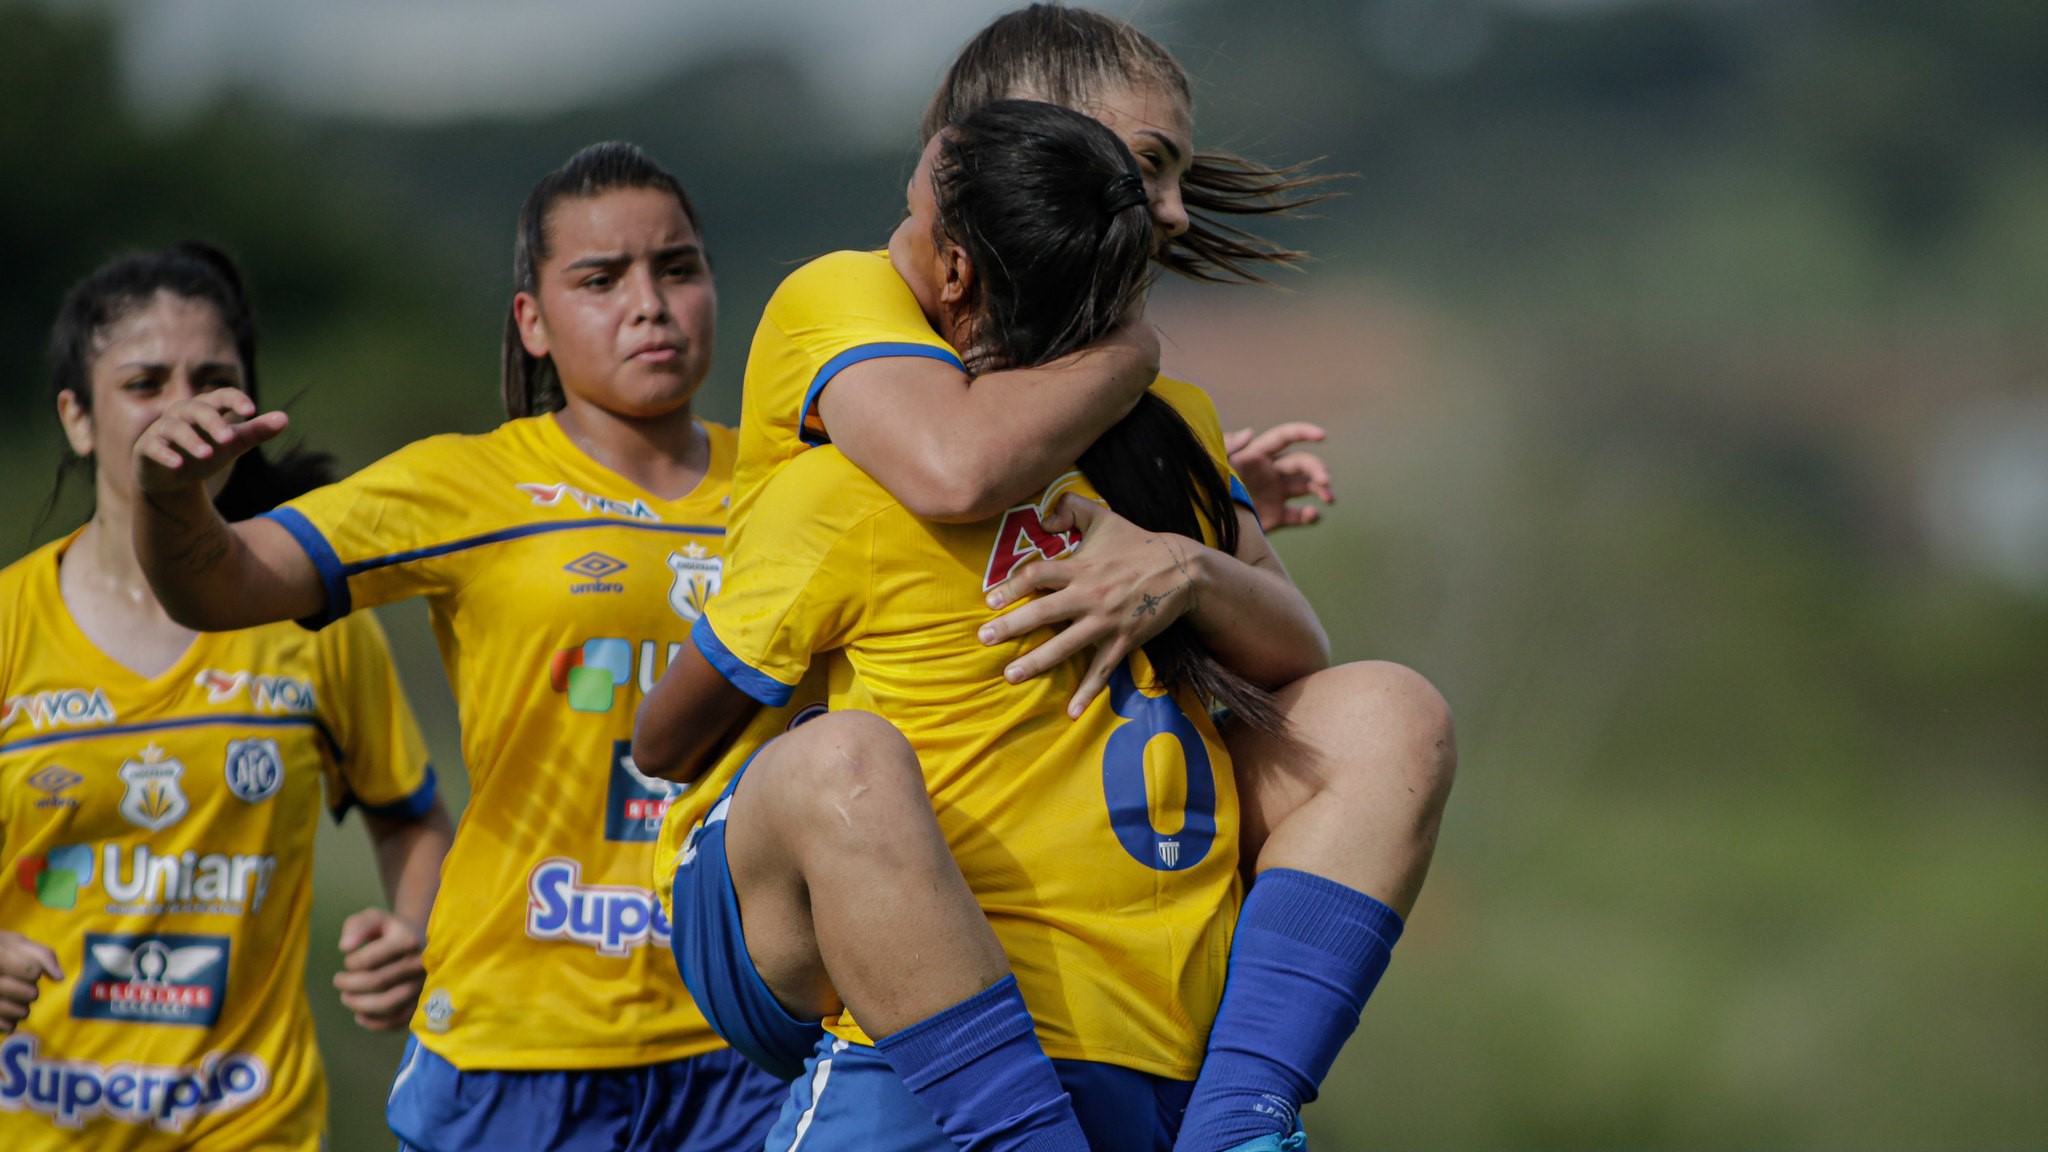 Avaí/Kindermann estreia no Campeonato Brasileiro Feminino Sub-20